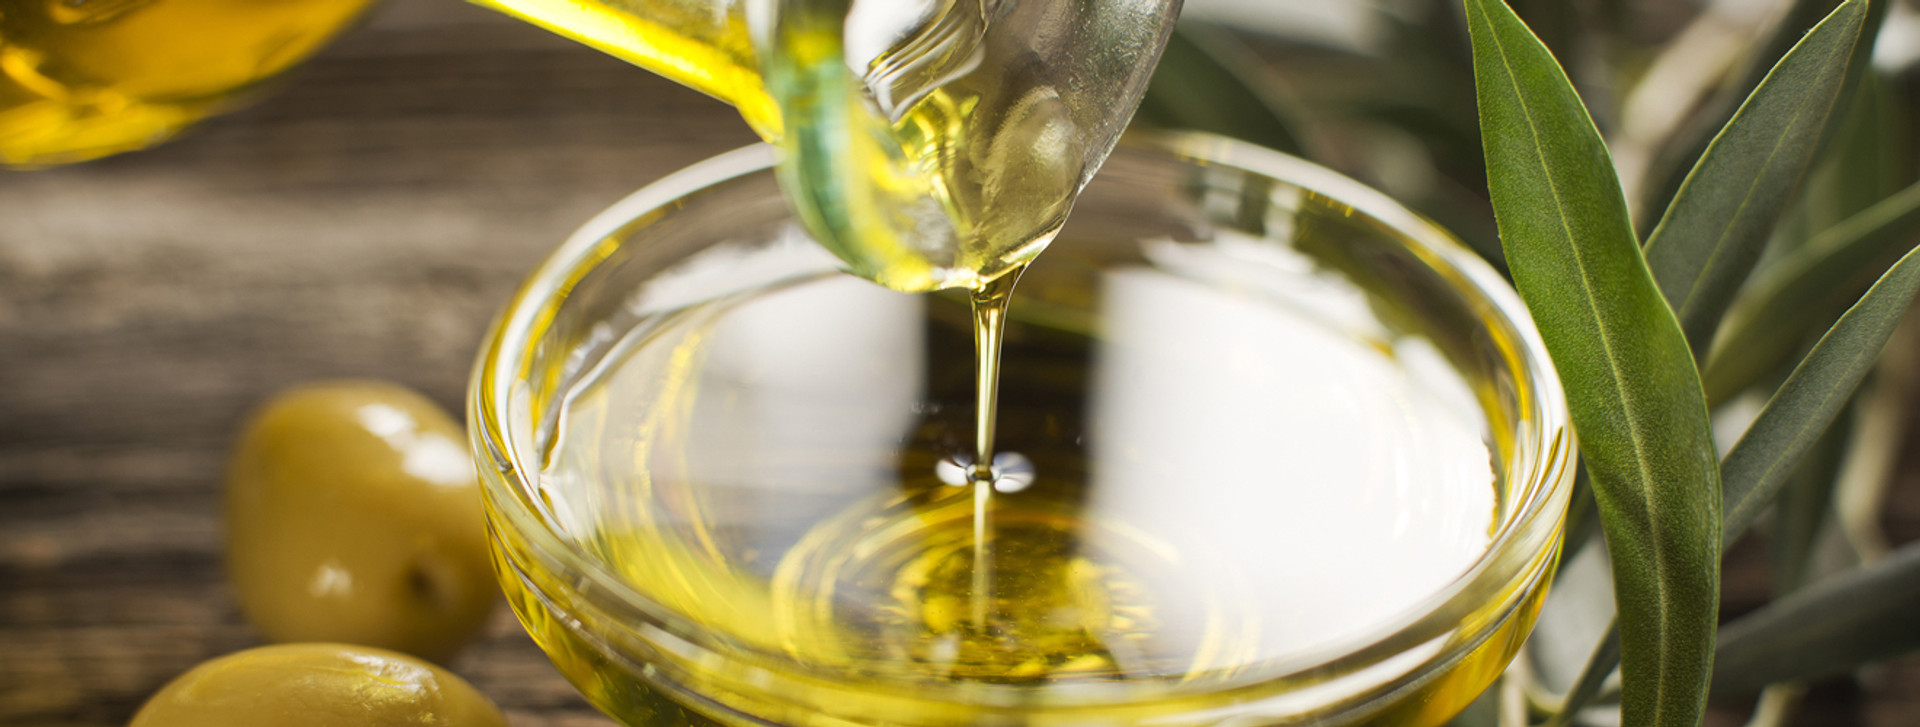 Оливкова олія: як правильно її обирати, пояснює професійний дегустатор. Користь, яка краща, ціна